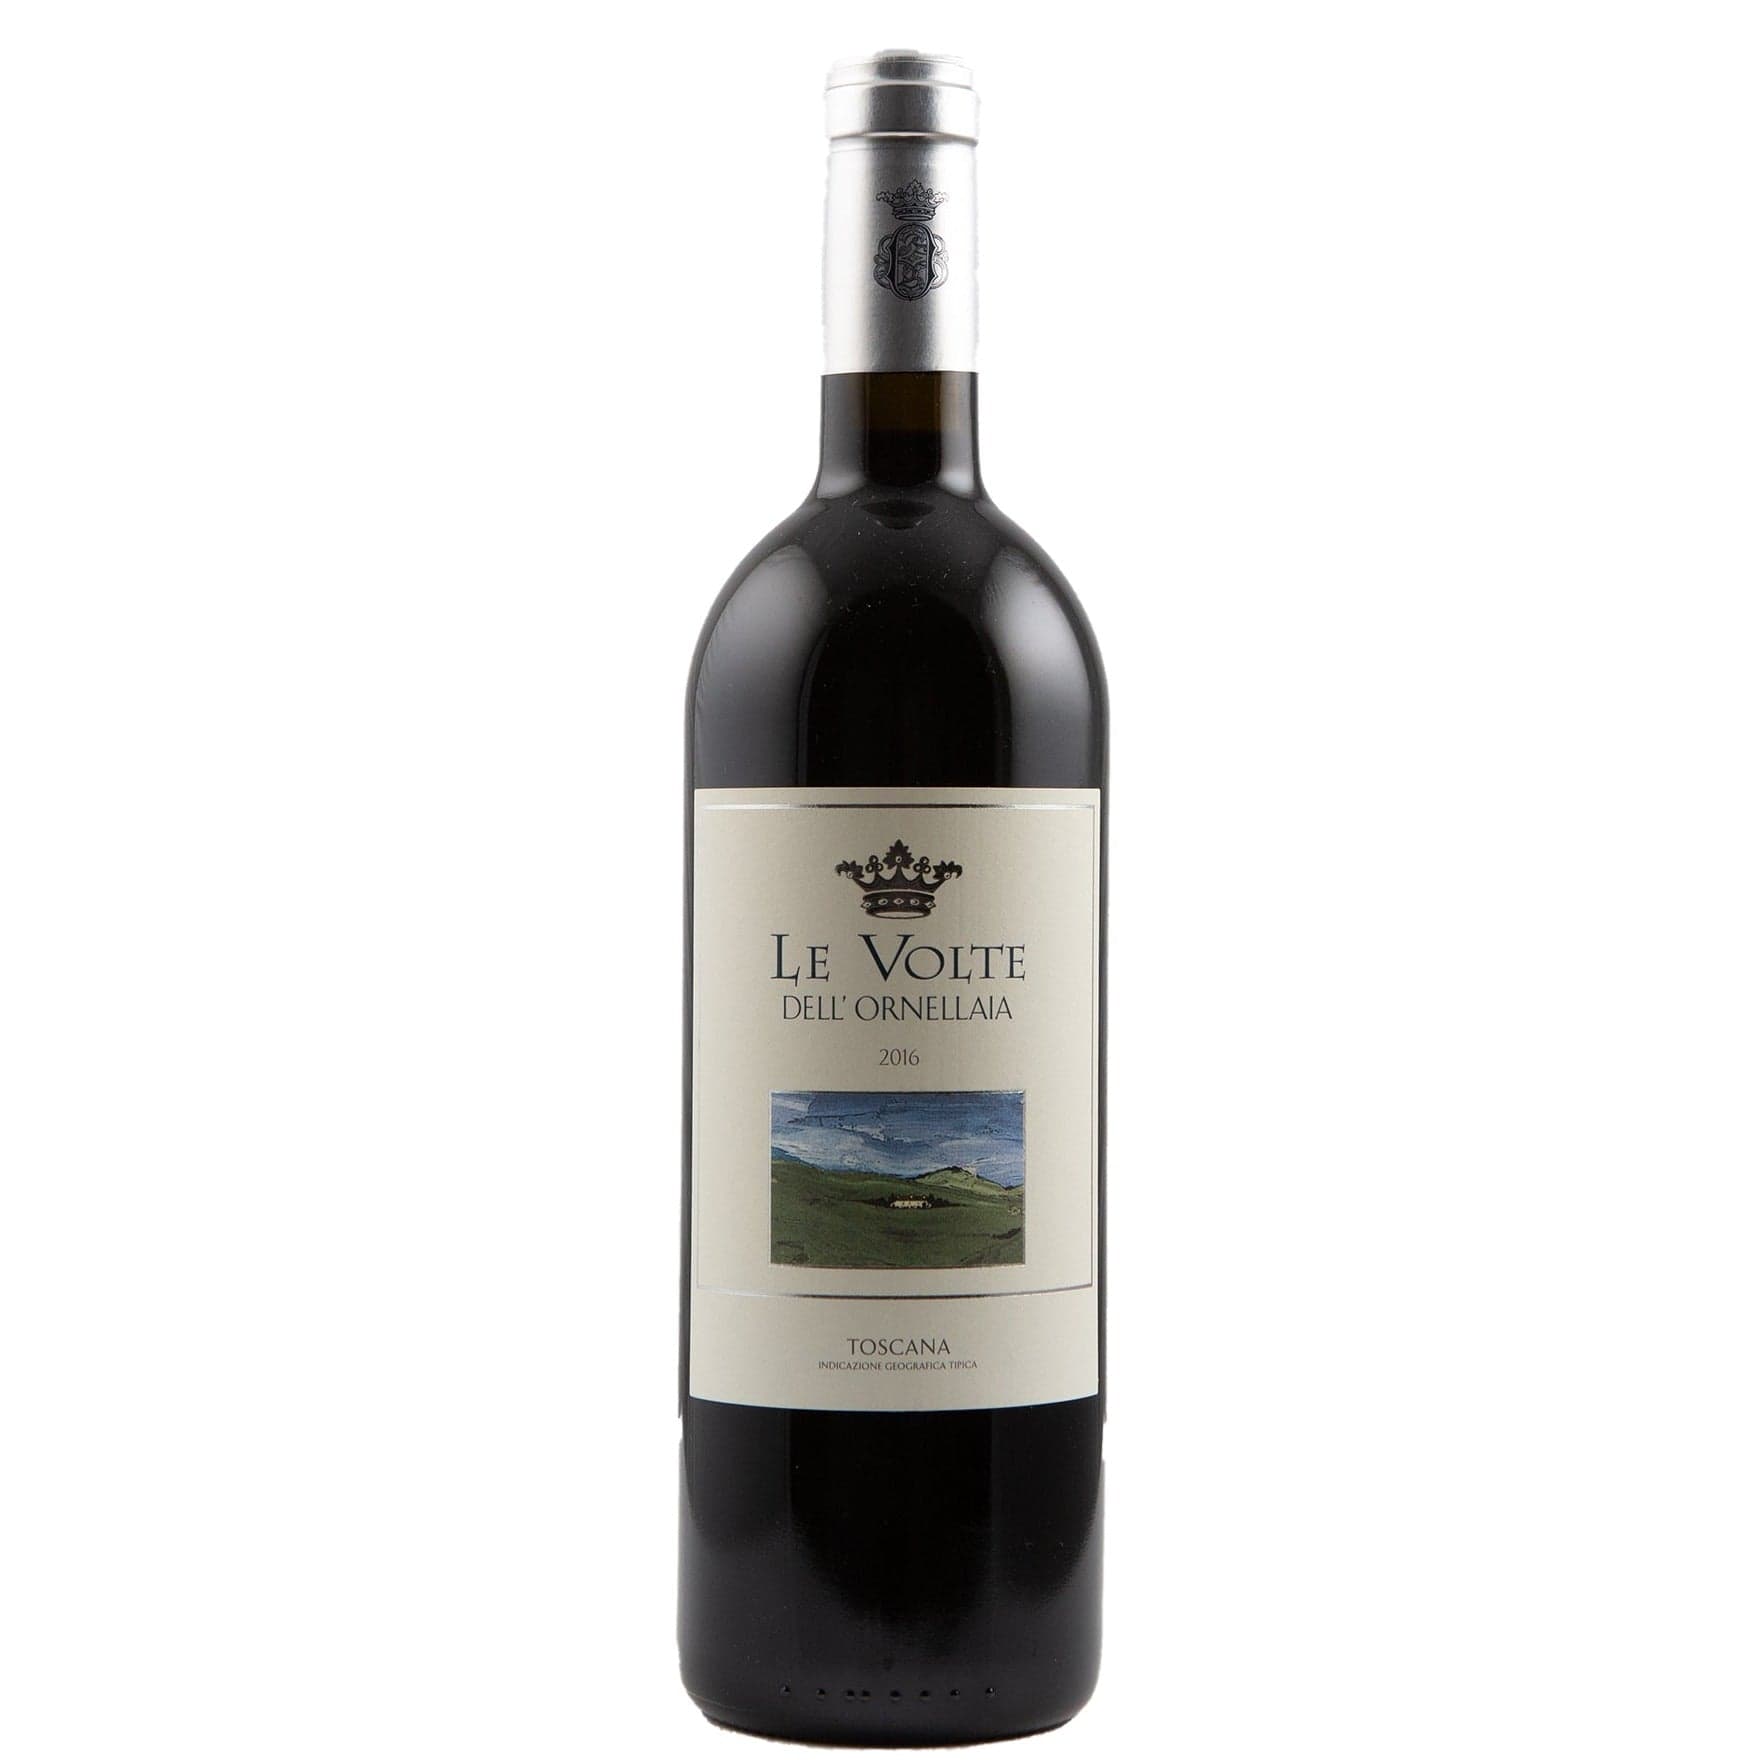 Single bottle of Red wine Tenuta dell'Ornellaia, Le Volte, Toscana IGT, 2016 67% Merlot, 20% Cabernet Sauvignon & 13% Sangiovese